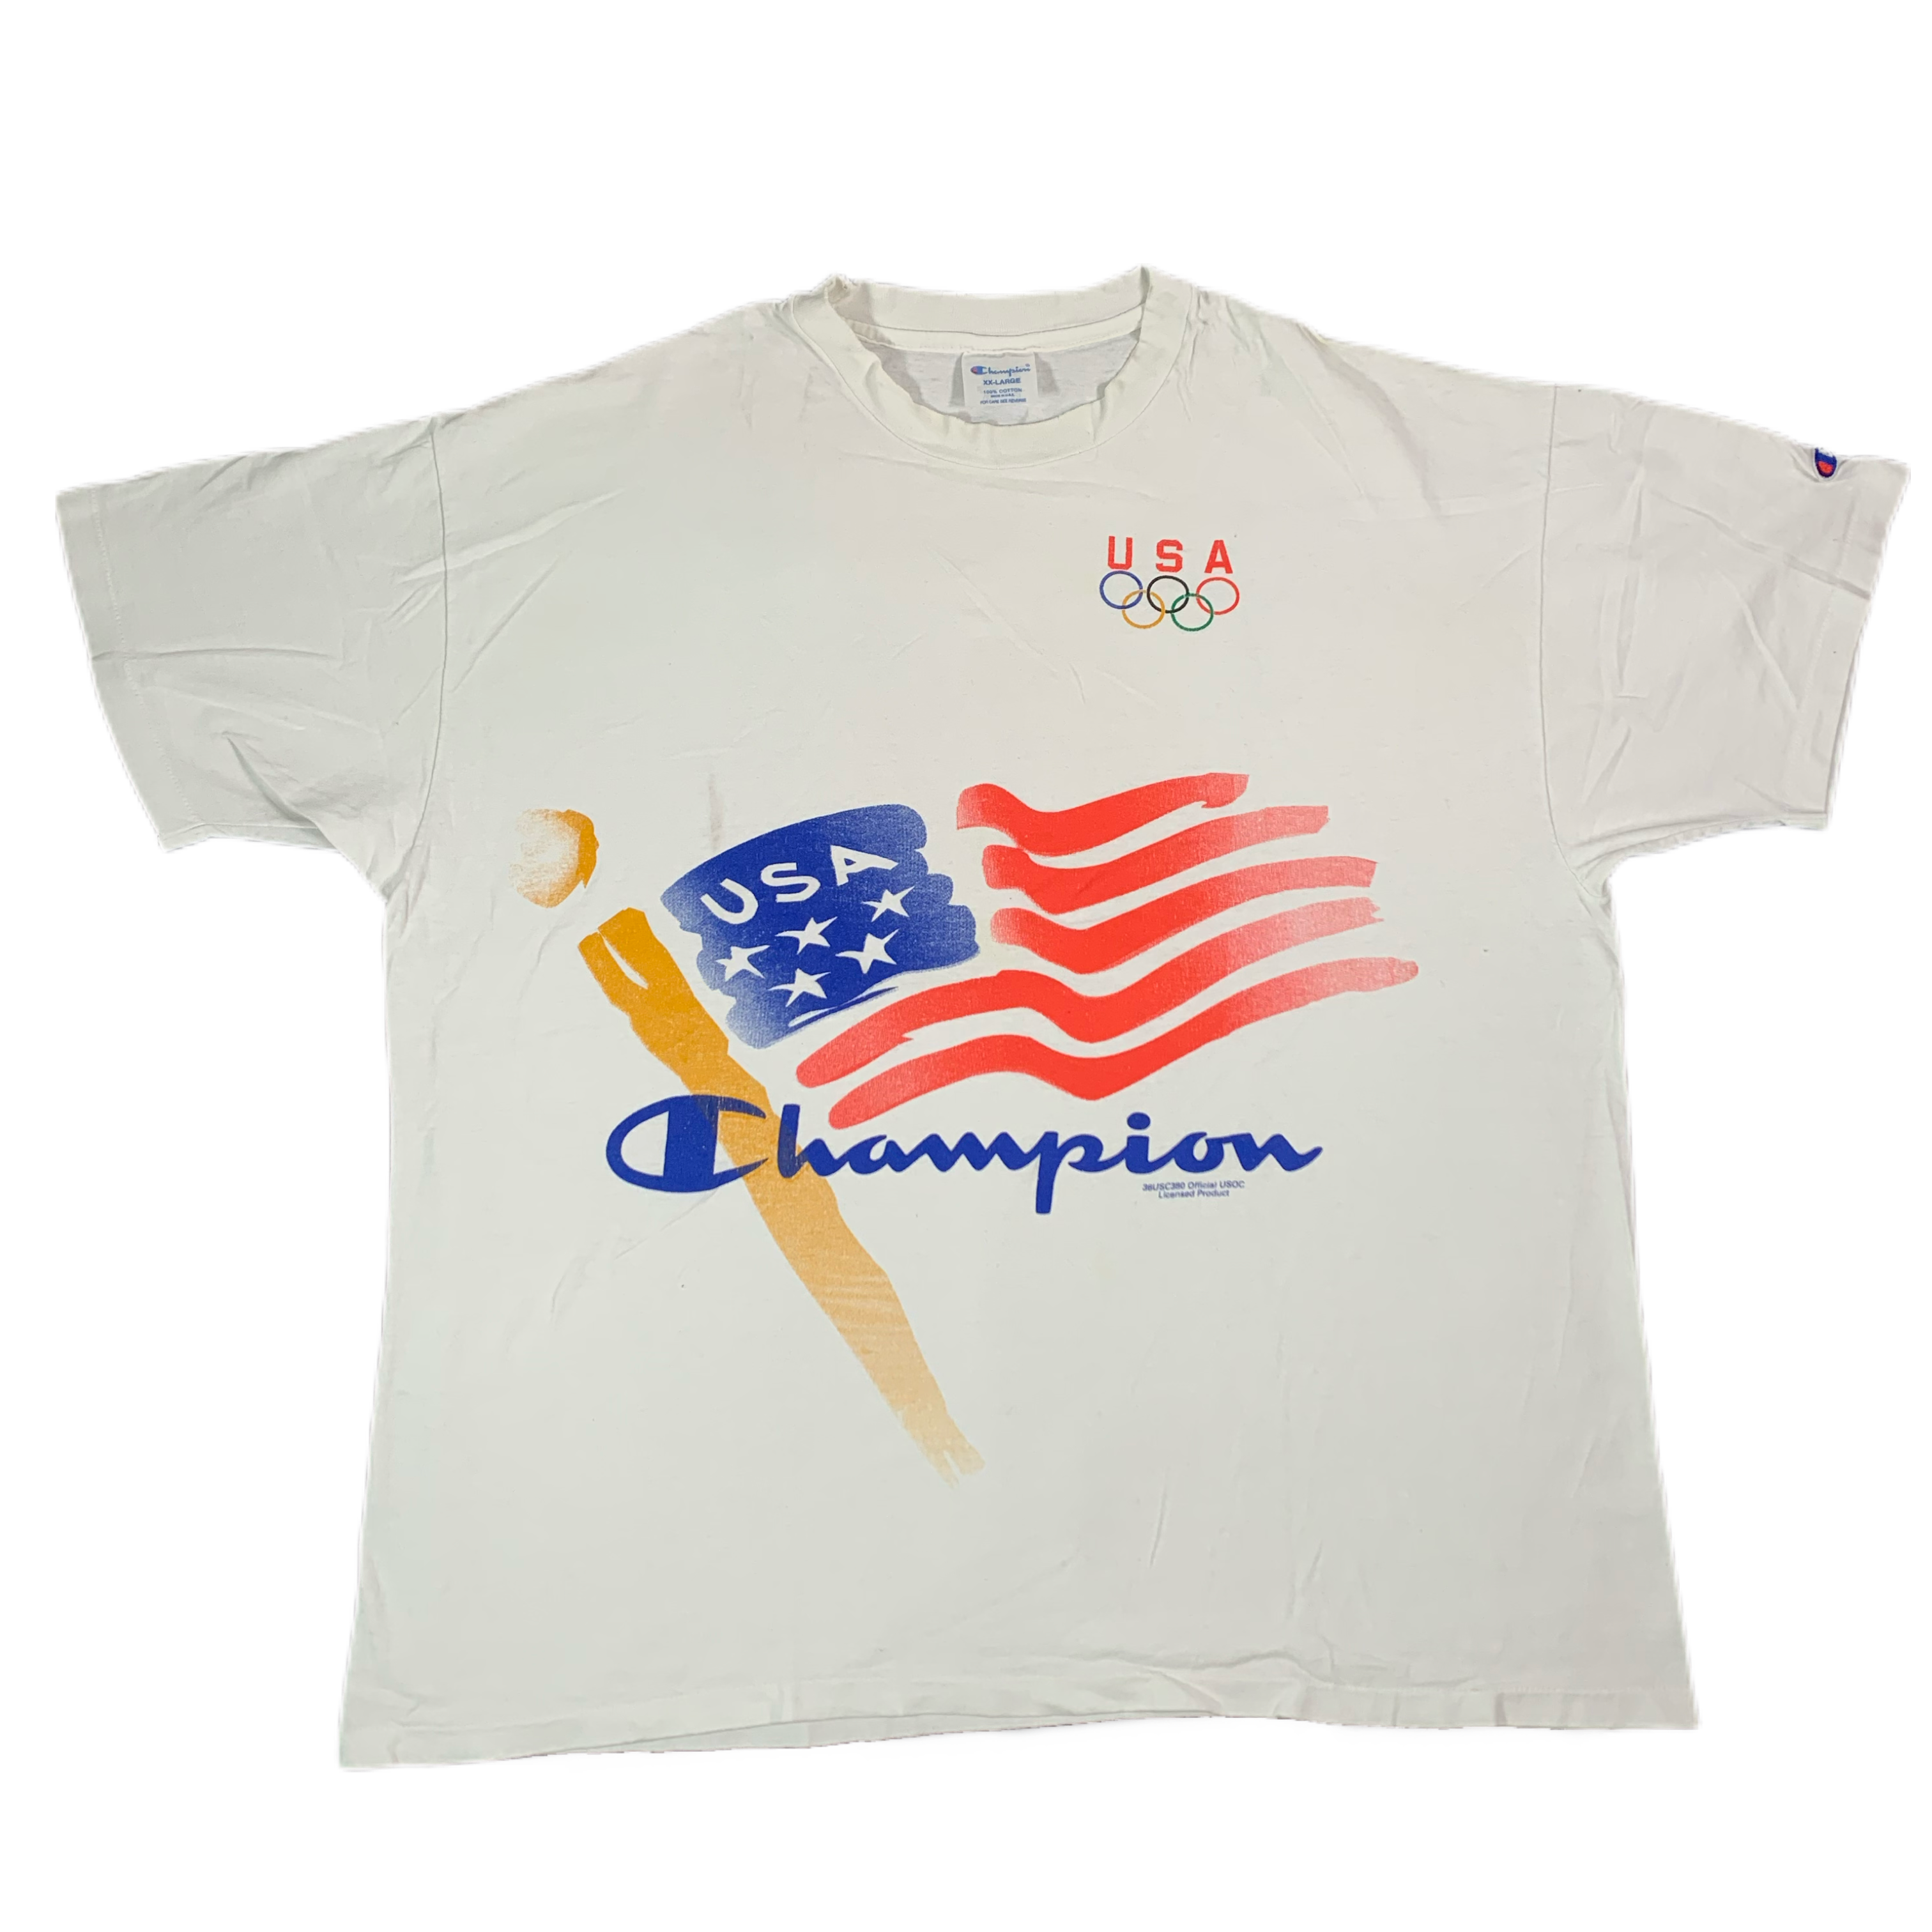 champion t shirt usa